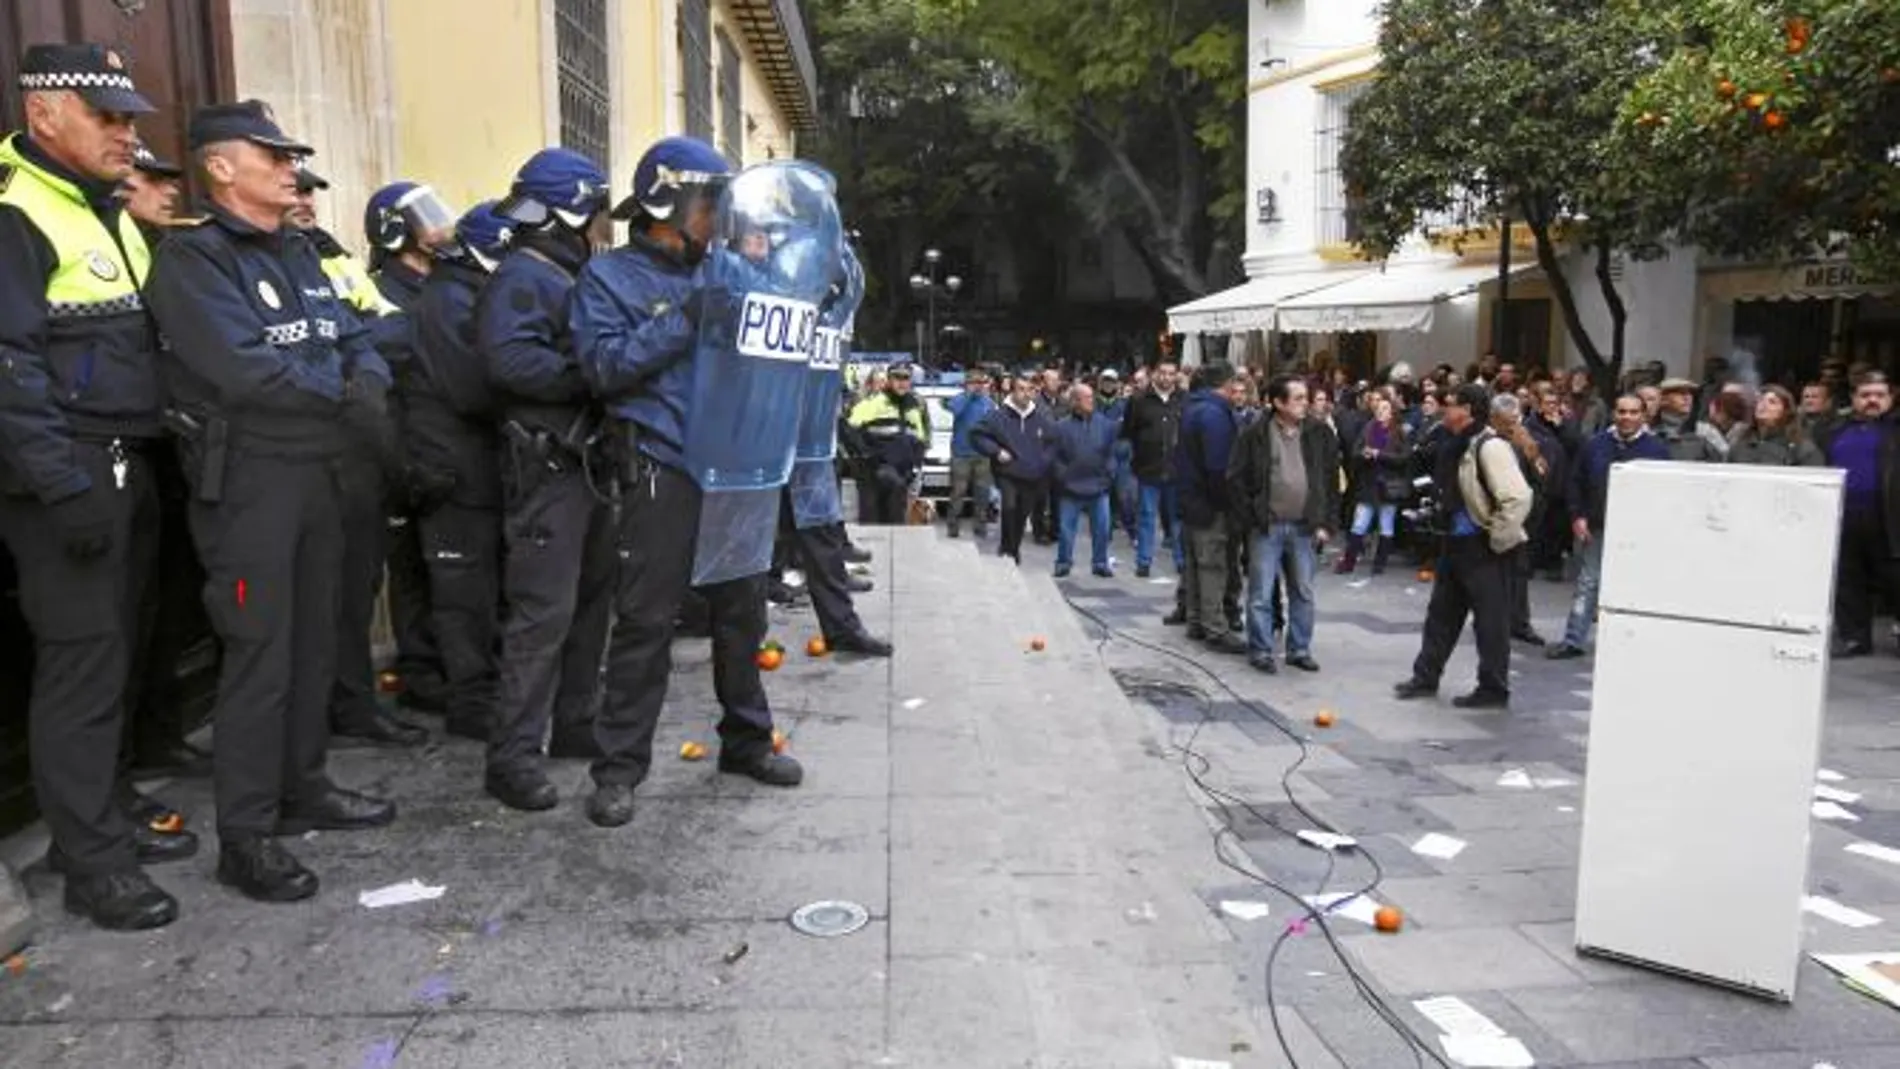 La demanda del pago de nóminas acaba en carga policial en Jerez